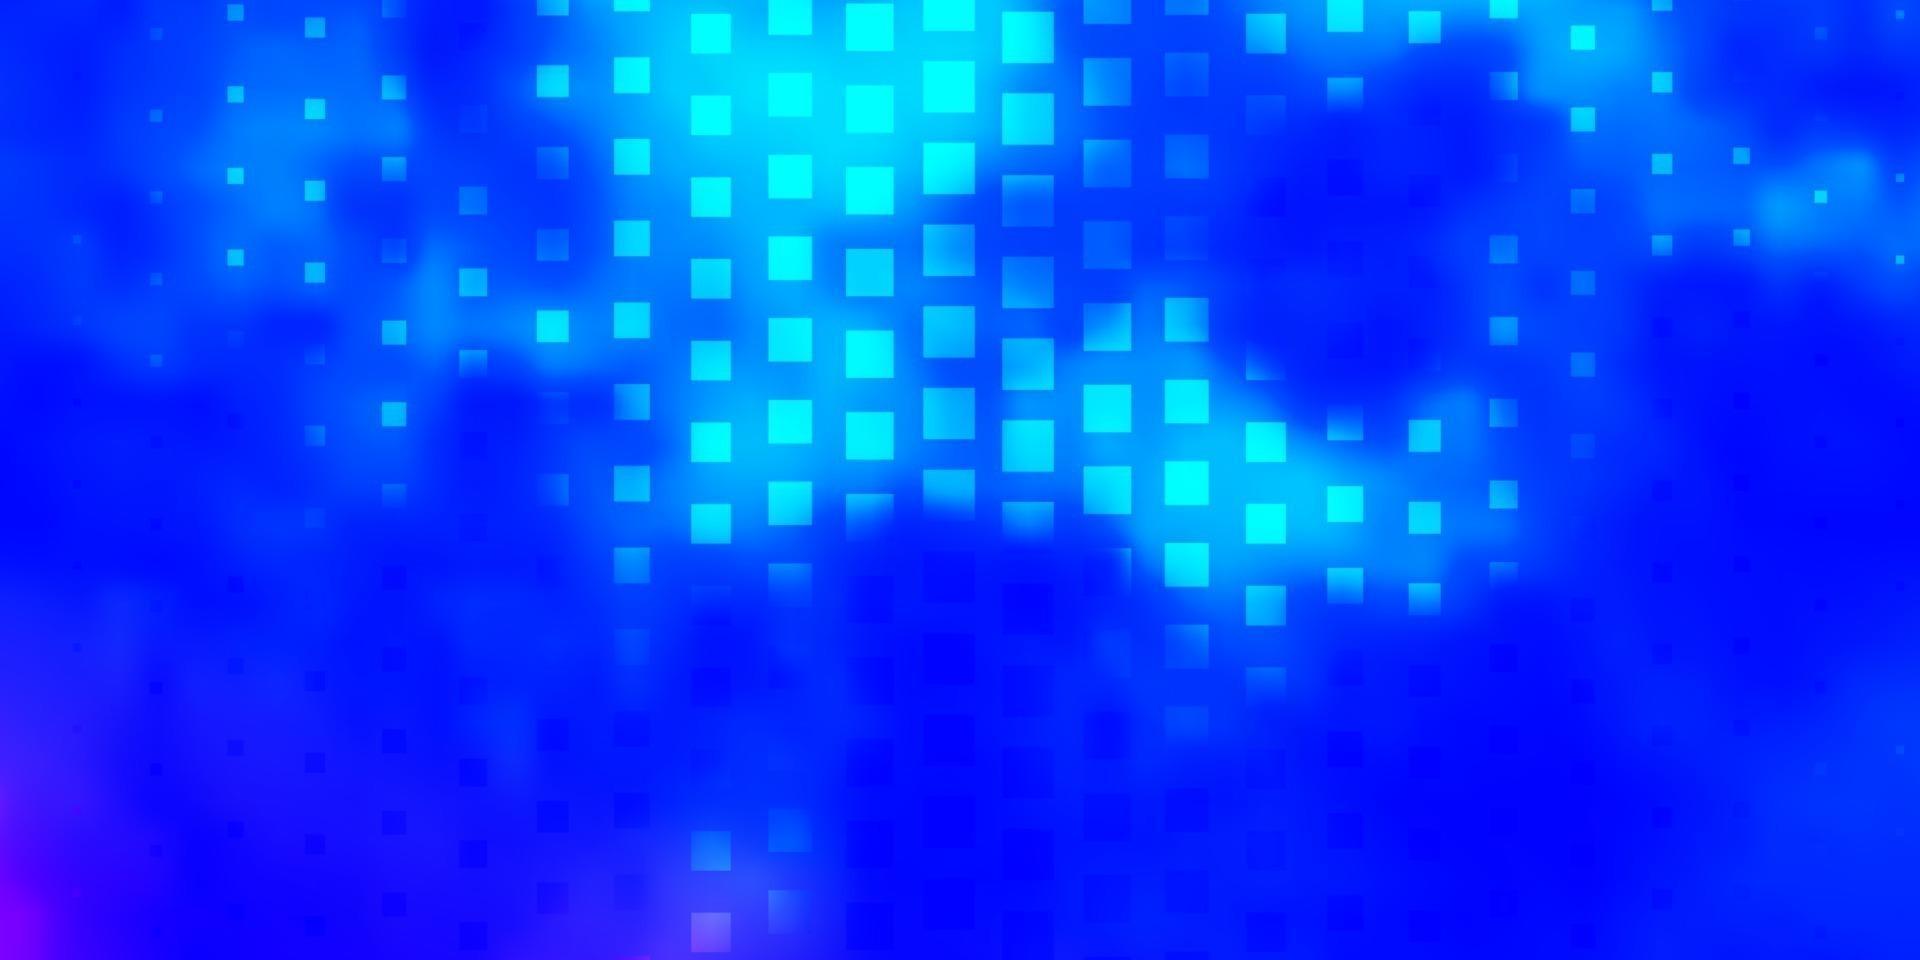 disposition de vecteur rose clair, bleu avec des lignes, des rectangles.